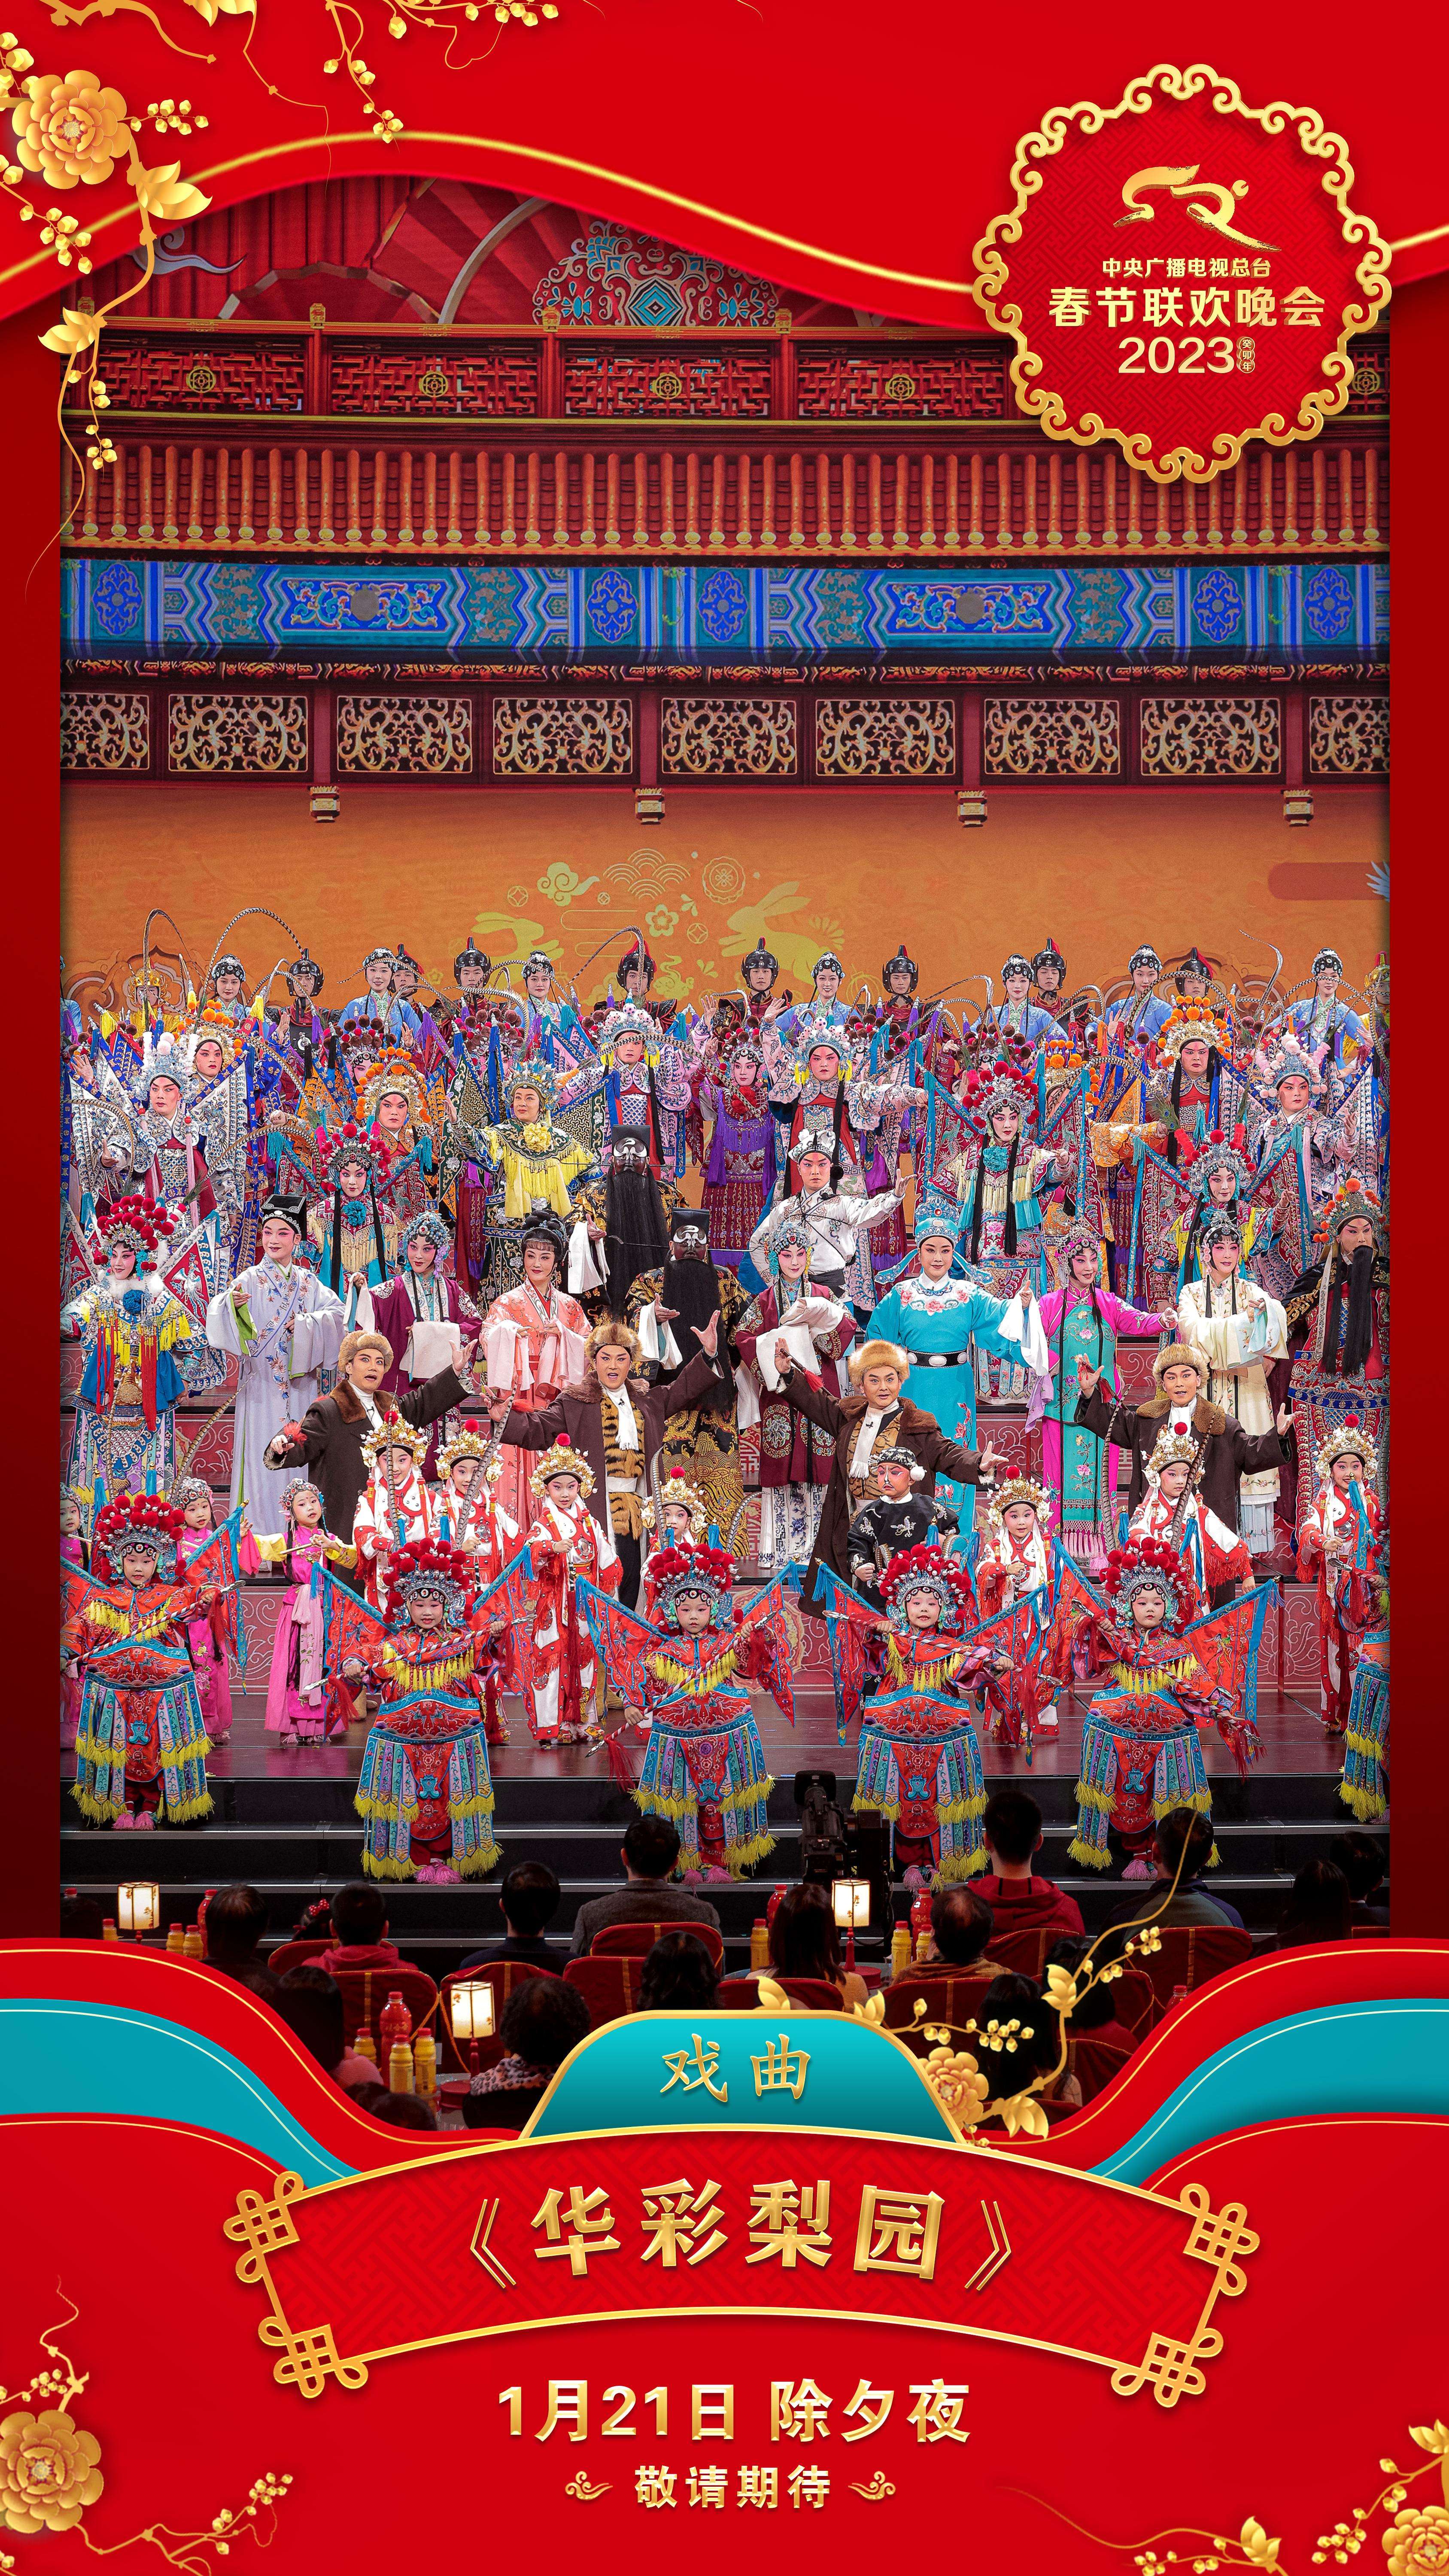 《2023年春节联欢晚会》节目海报发布8.jpg